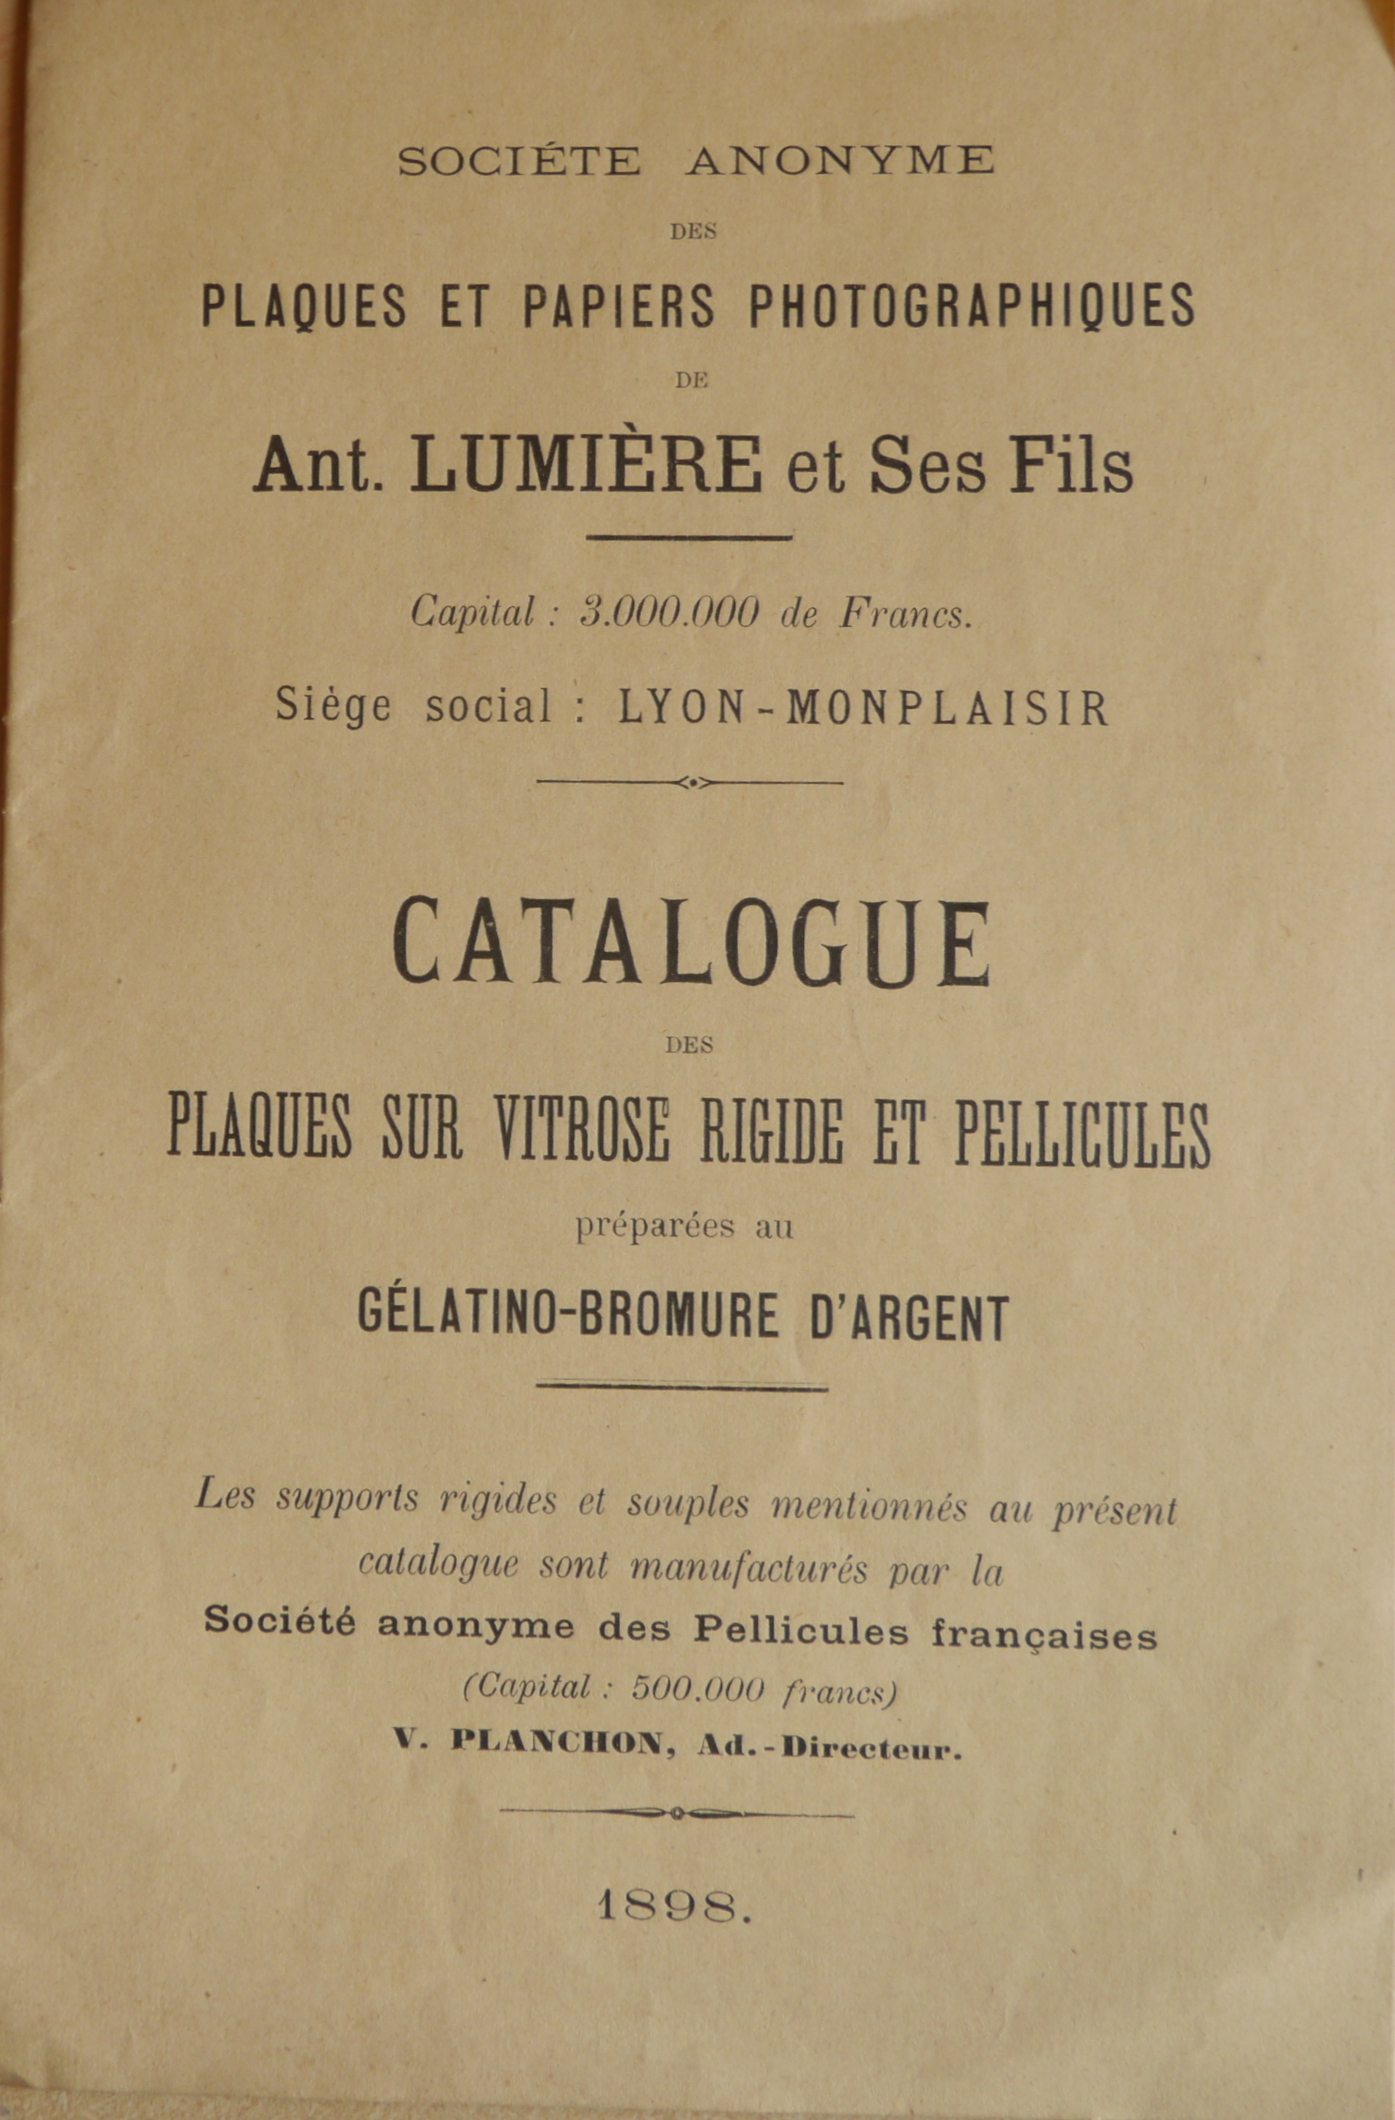 Catalogue des Plaques sur Vitrose rigide et Pellicules préparées au Gélatino-Bromure d'Argent - 1898